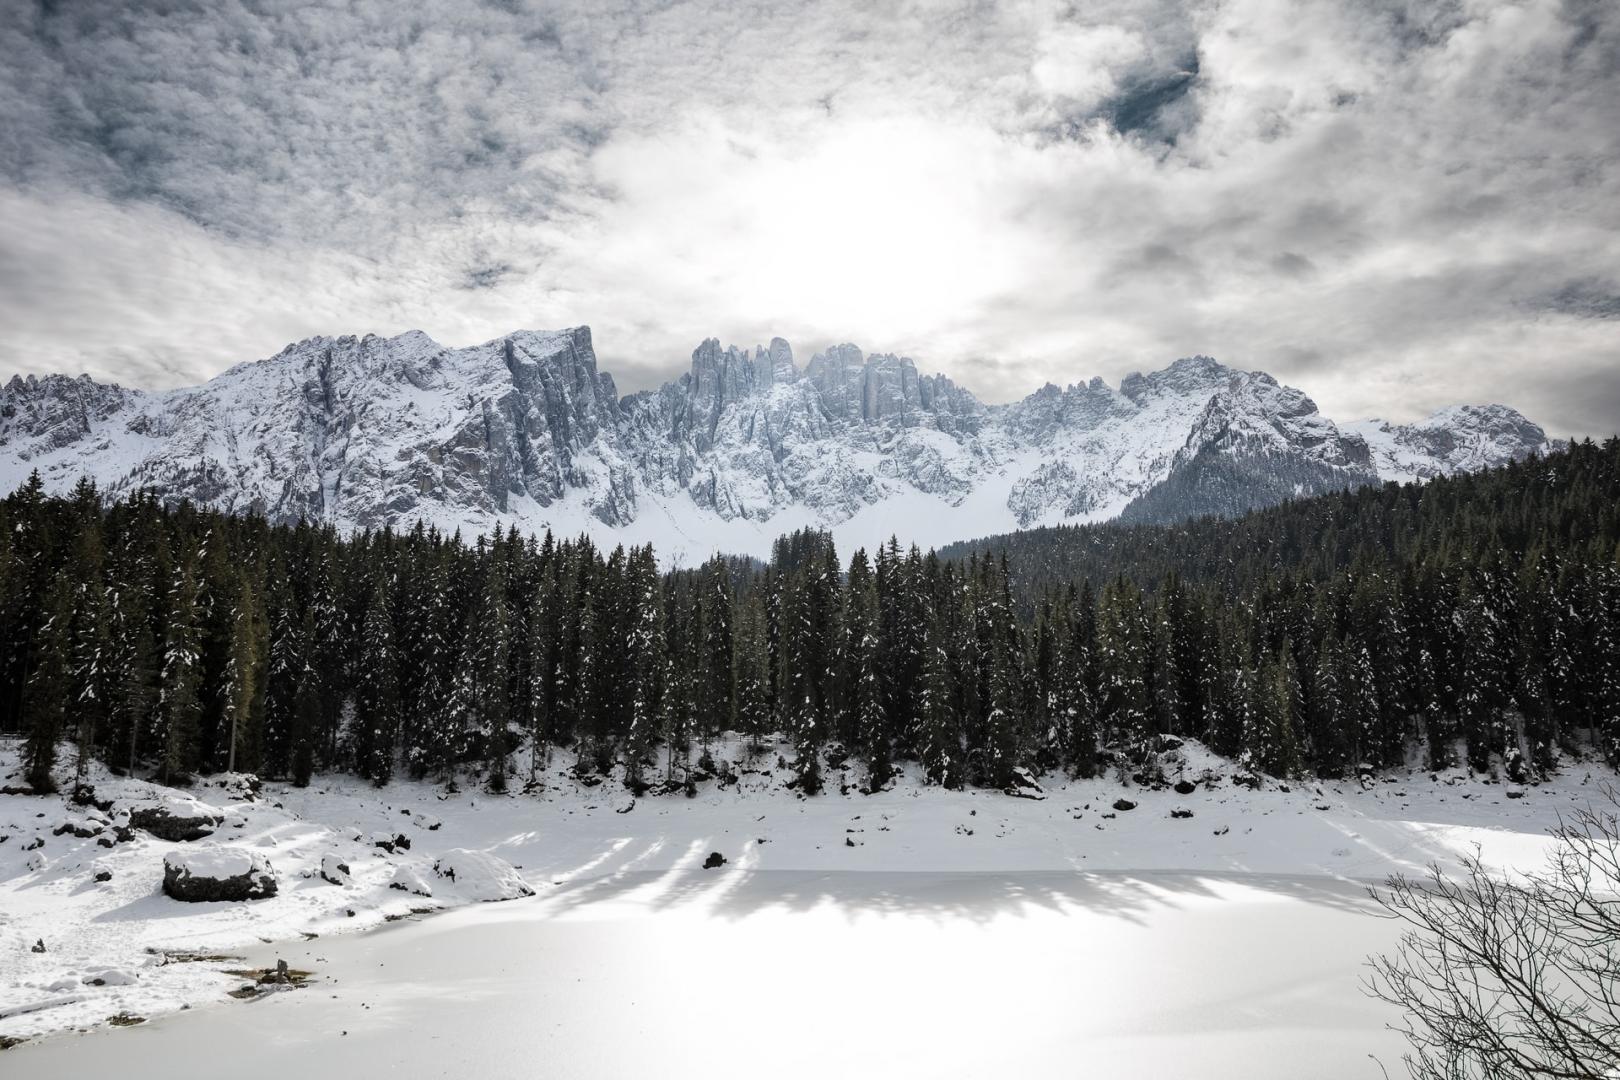 Familienurlaub in Südtirol - die 8 schönsten Ferienorte im Winter